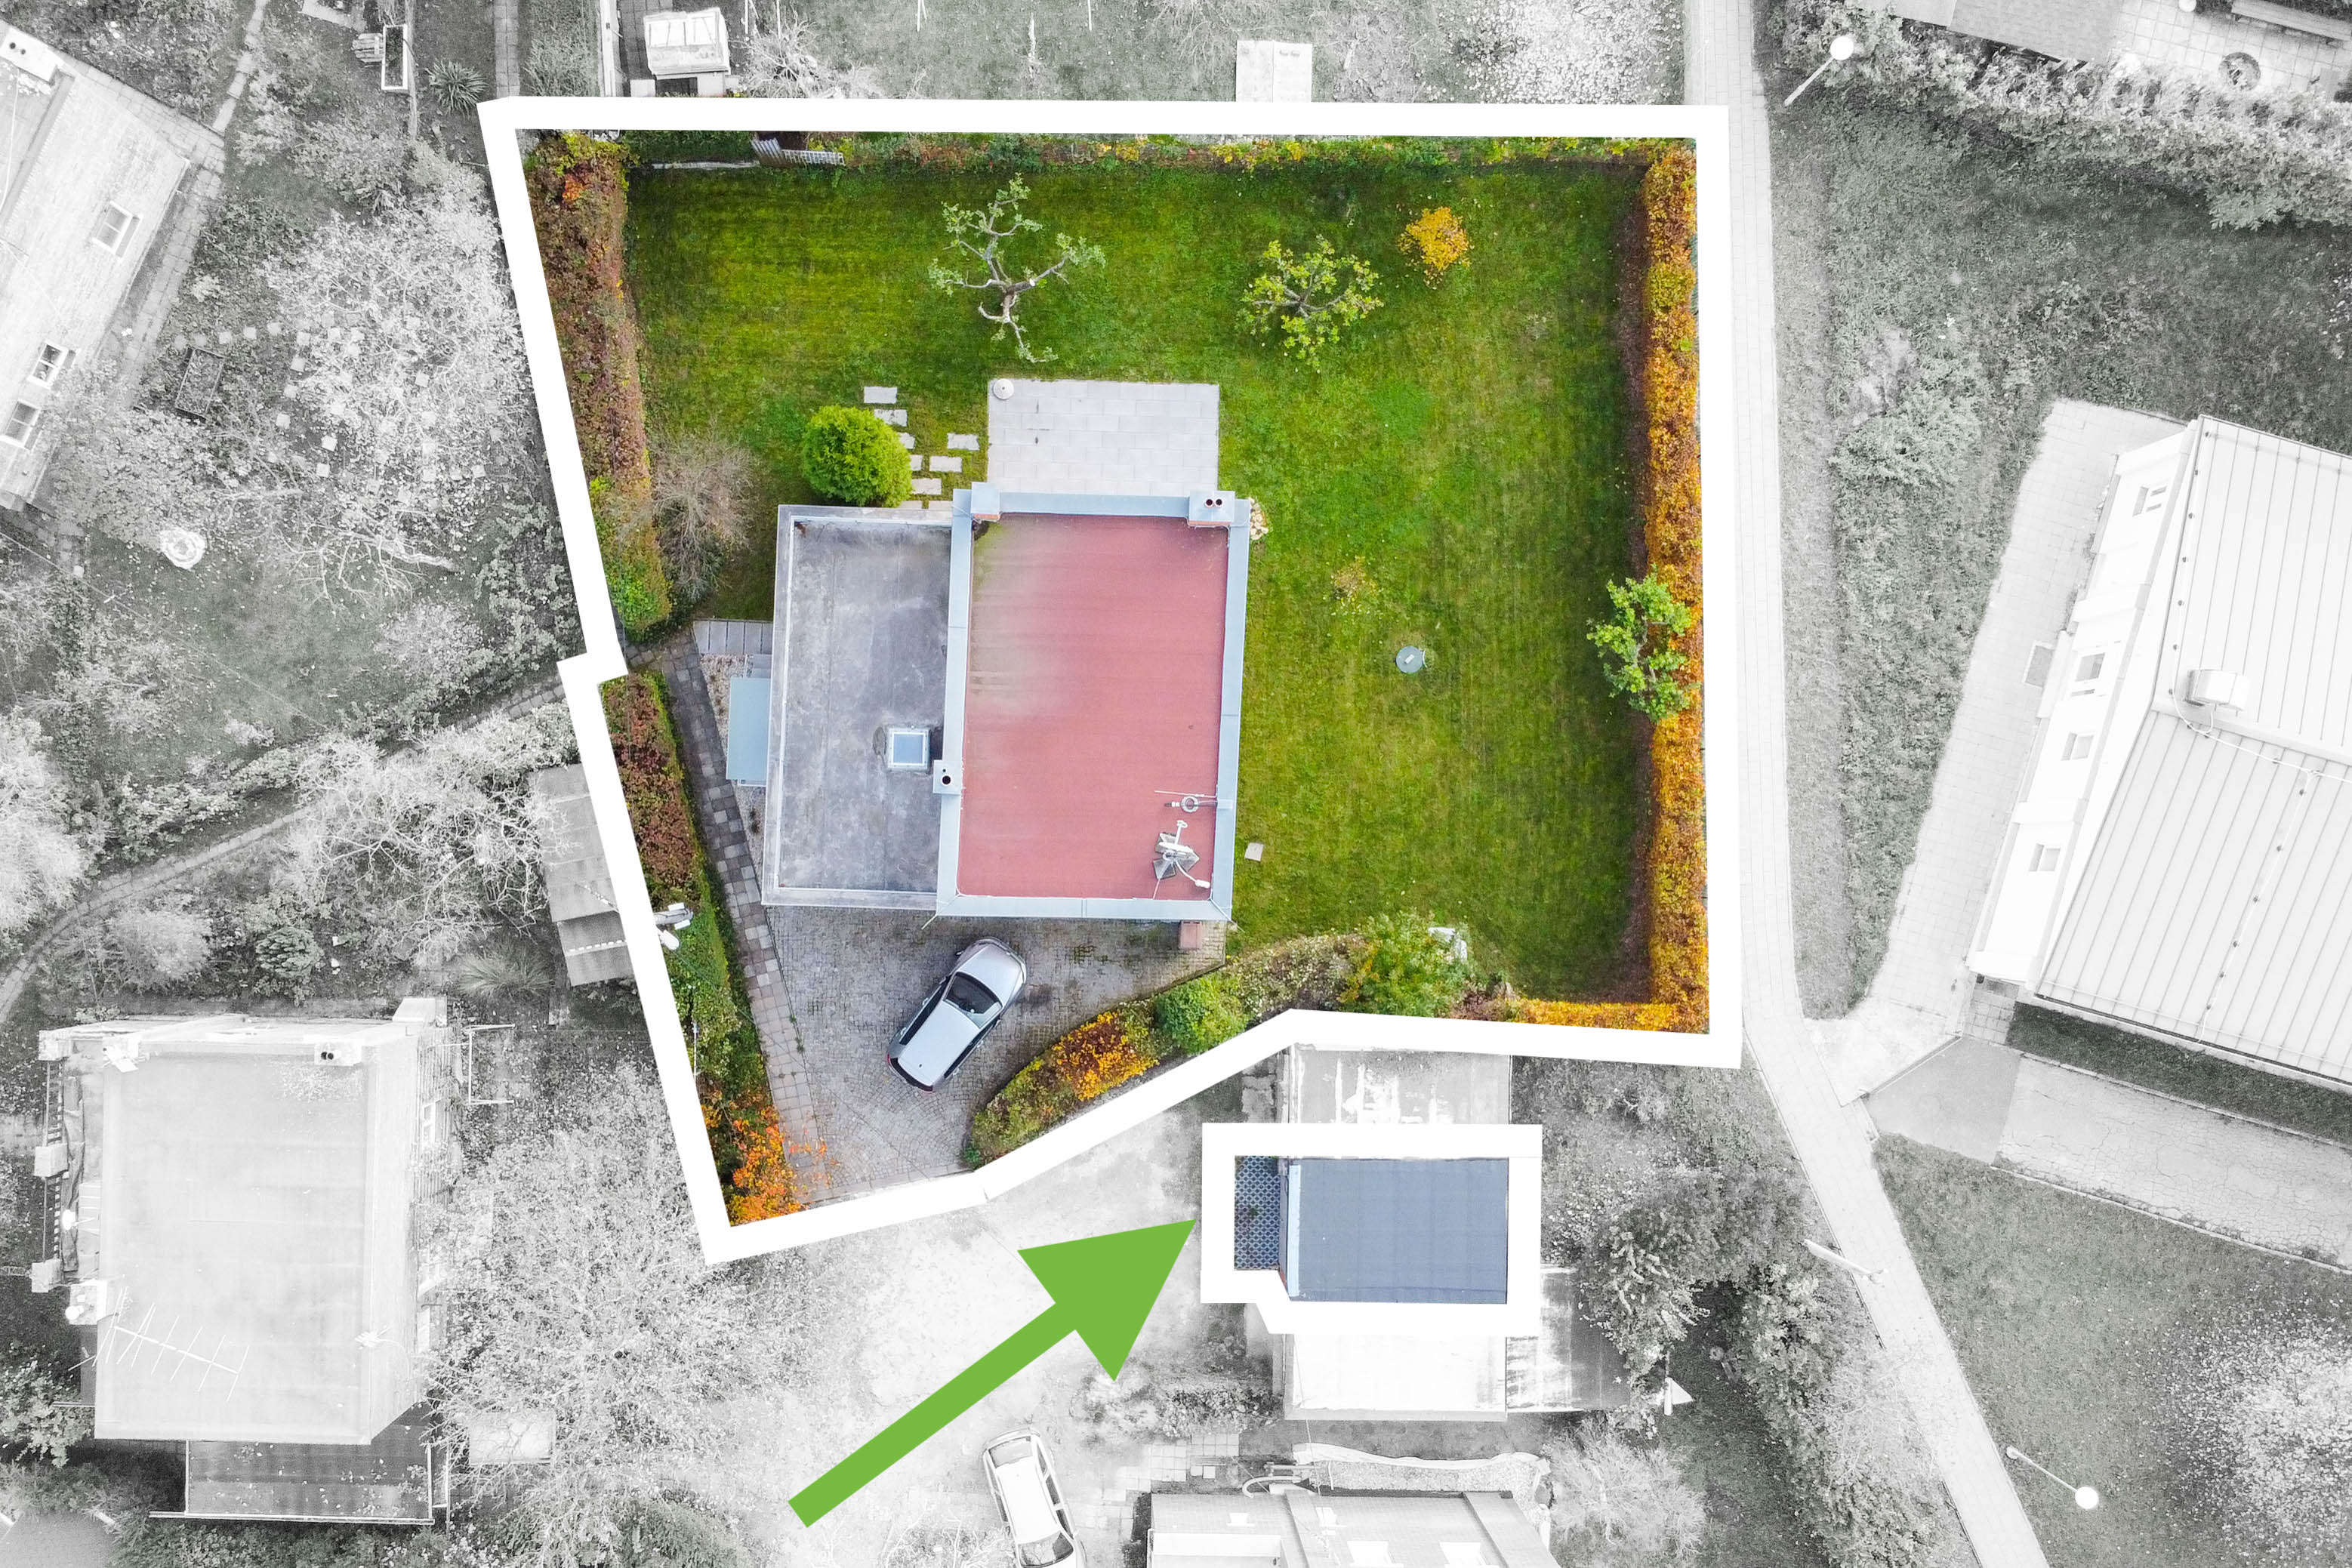 zahrada domu z dronu s vyznačením hranic